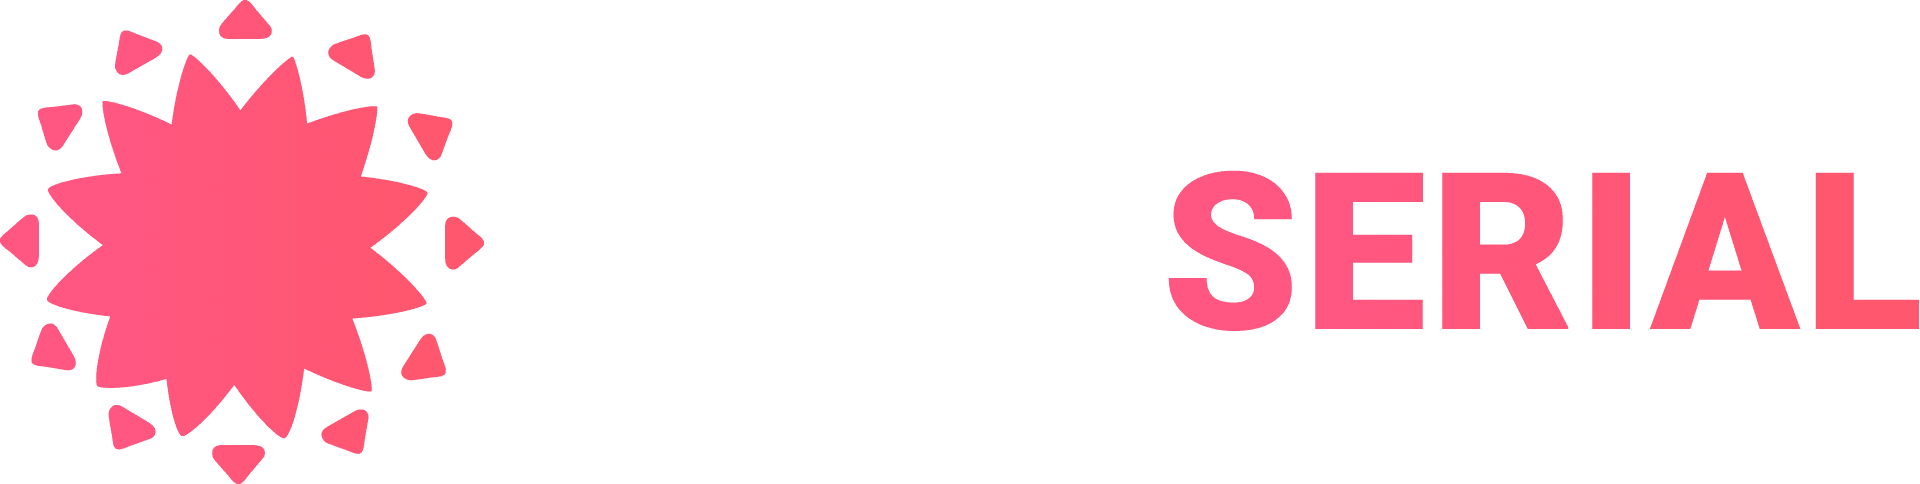 Логотип turkserial